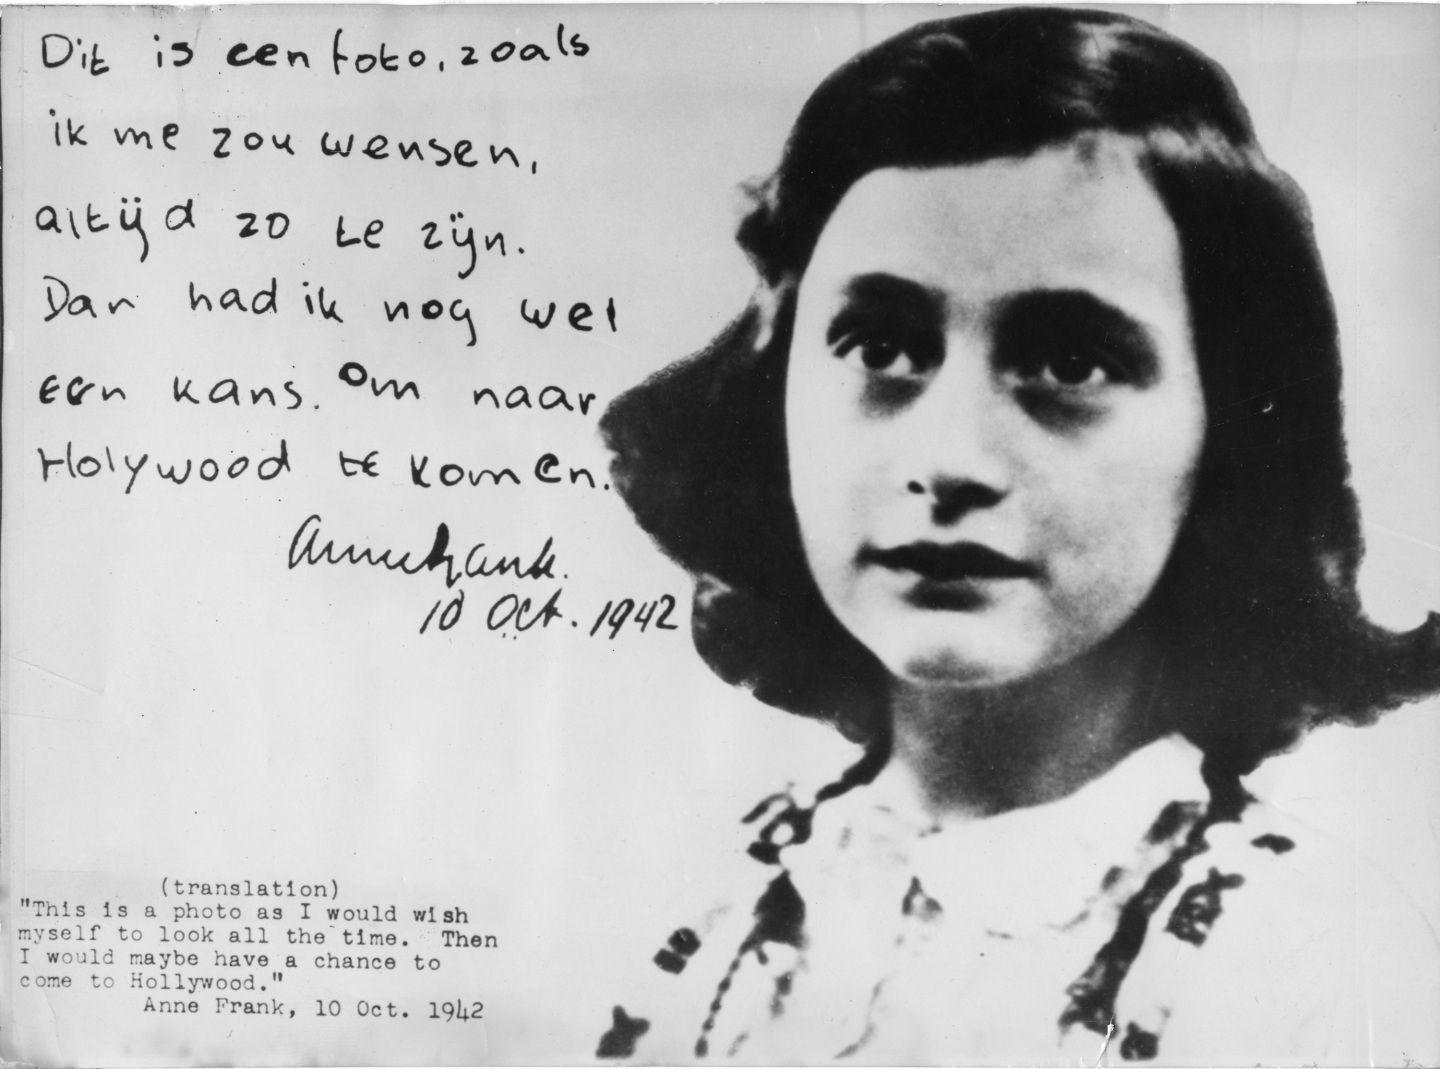 Anne Frank HD Wallpaper Free Download. Anne Frank